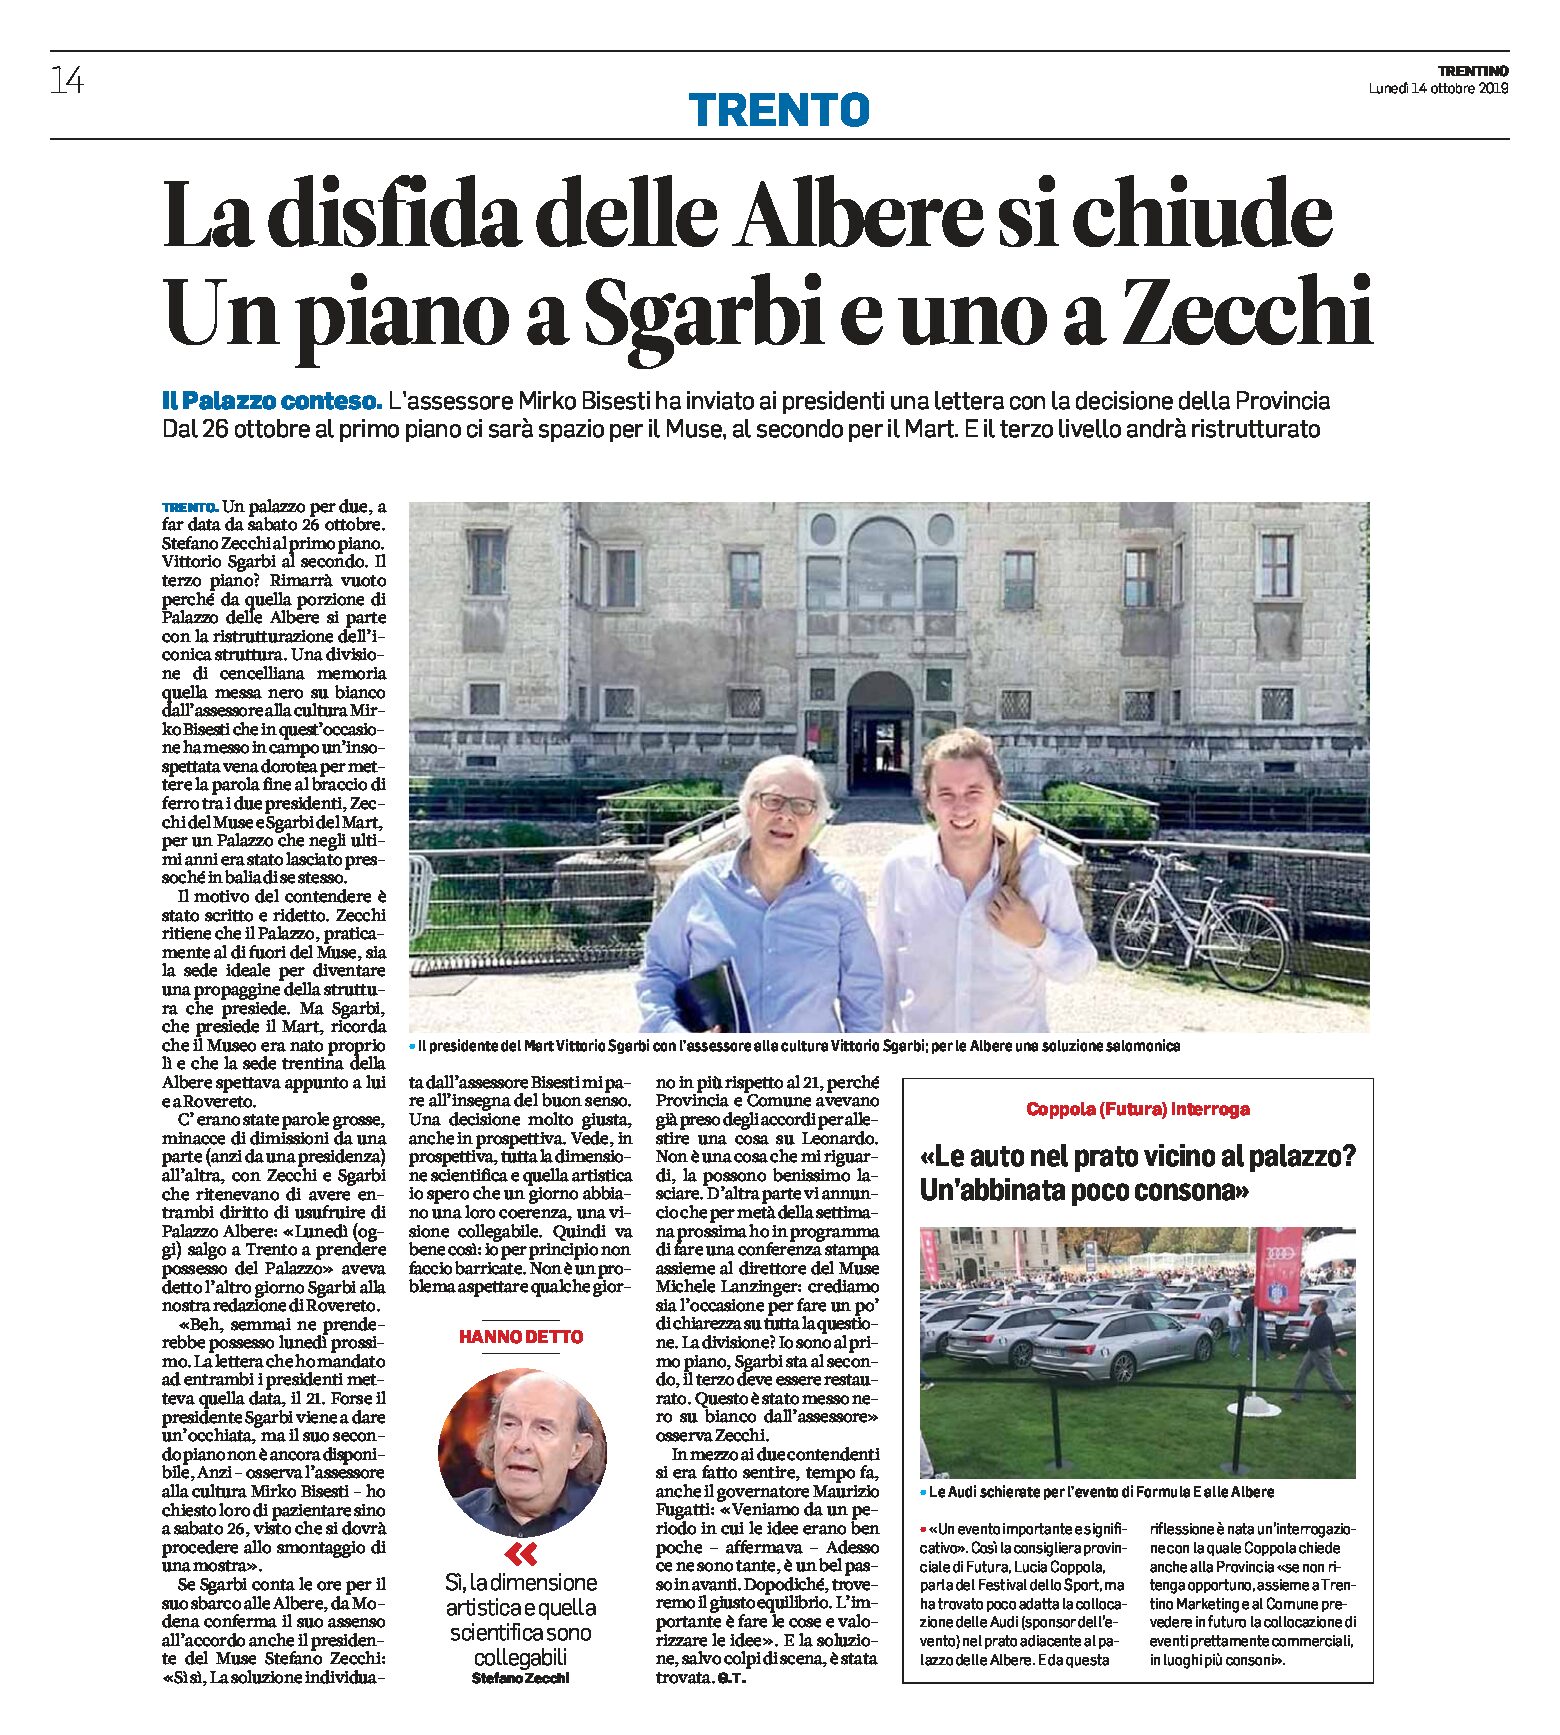 Trento, Palazzo delle Albere: un piano per Sgarbi e un piano per Zecchi. E le Audi parcheggiate davanti al palazzo?